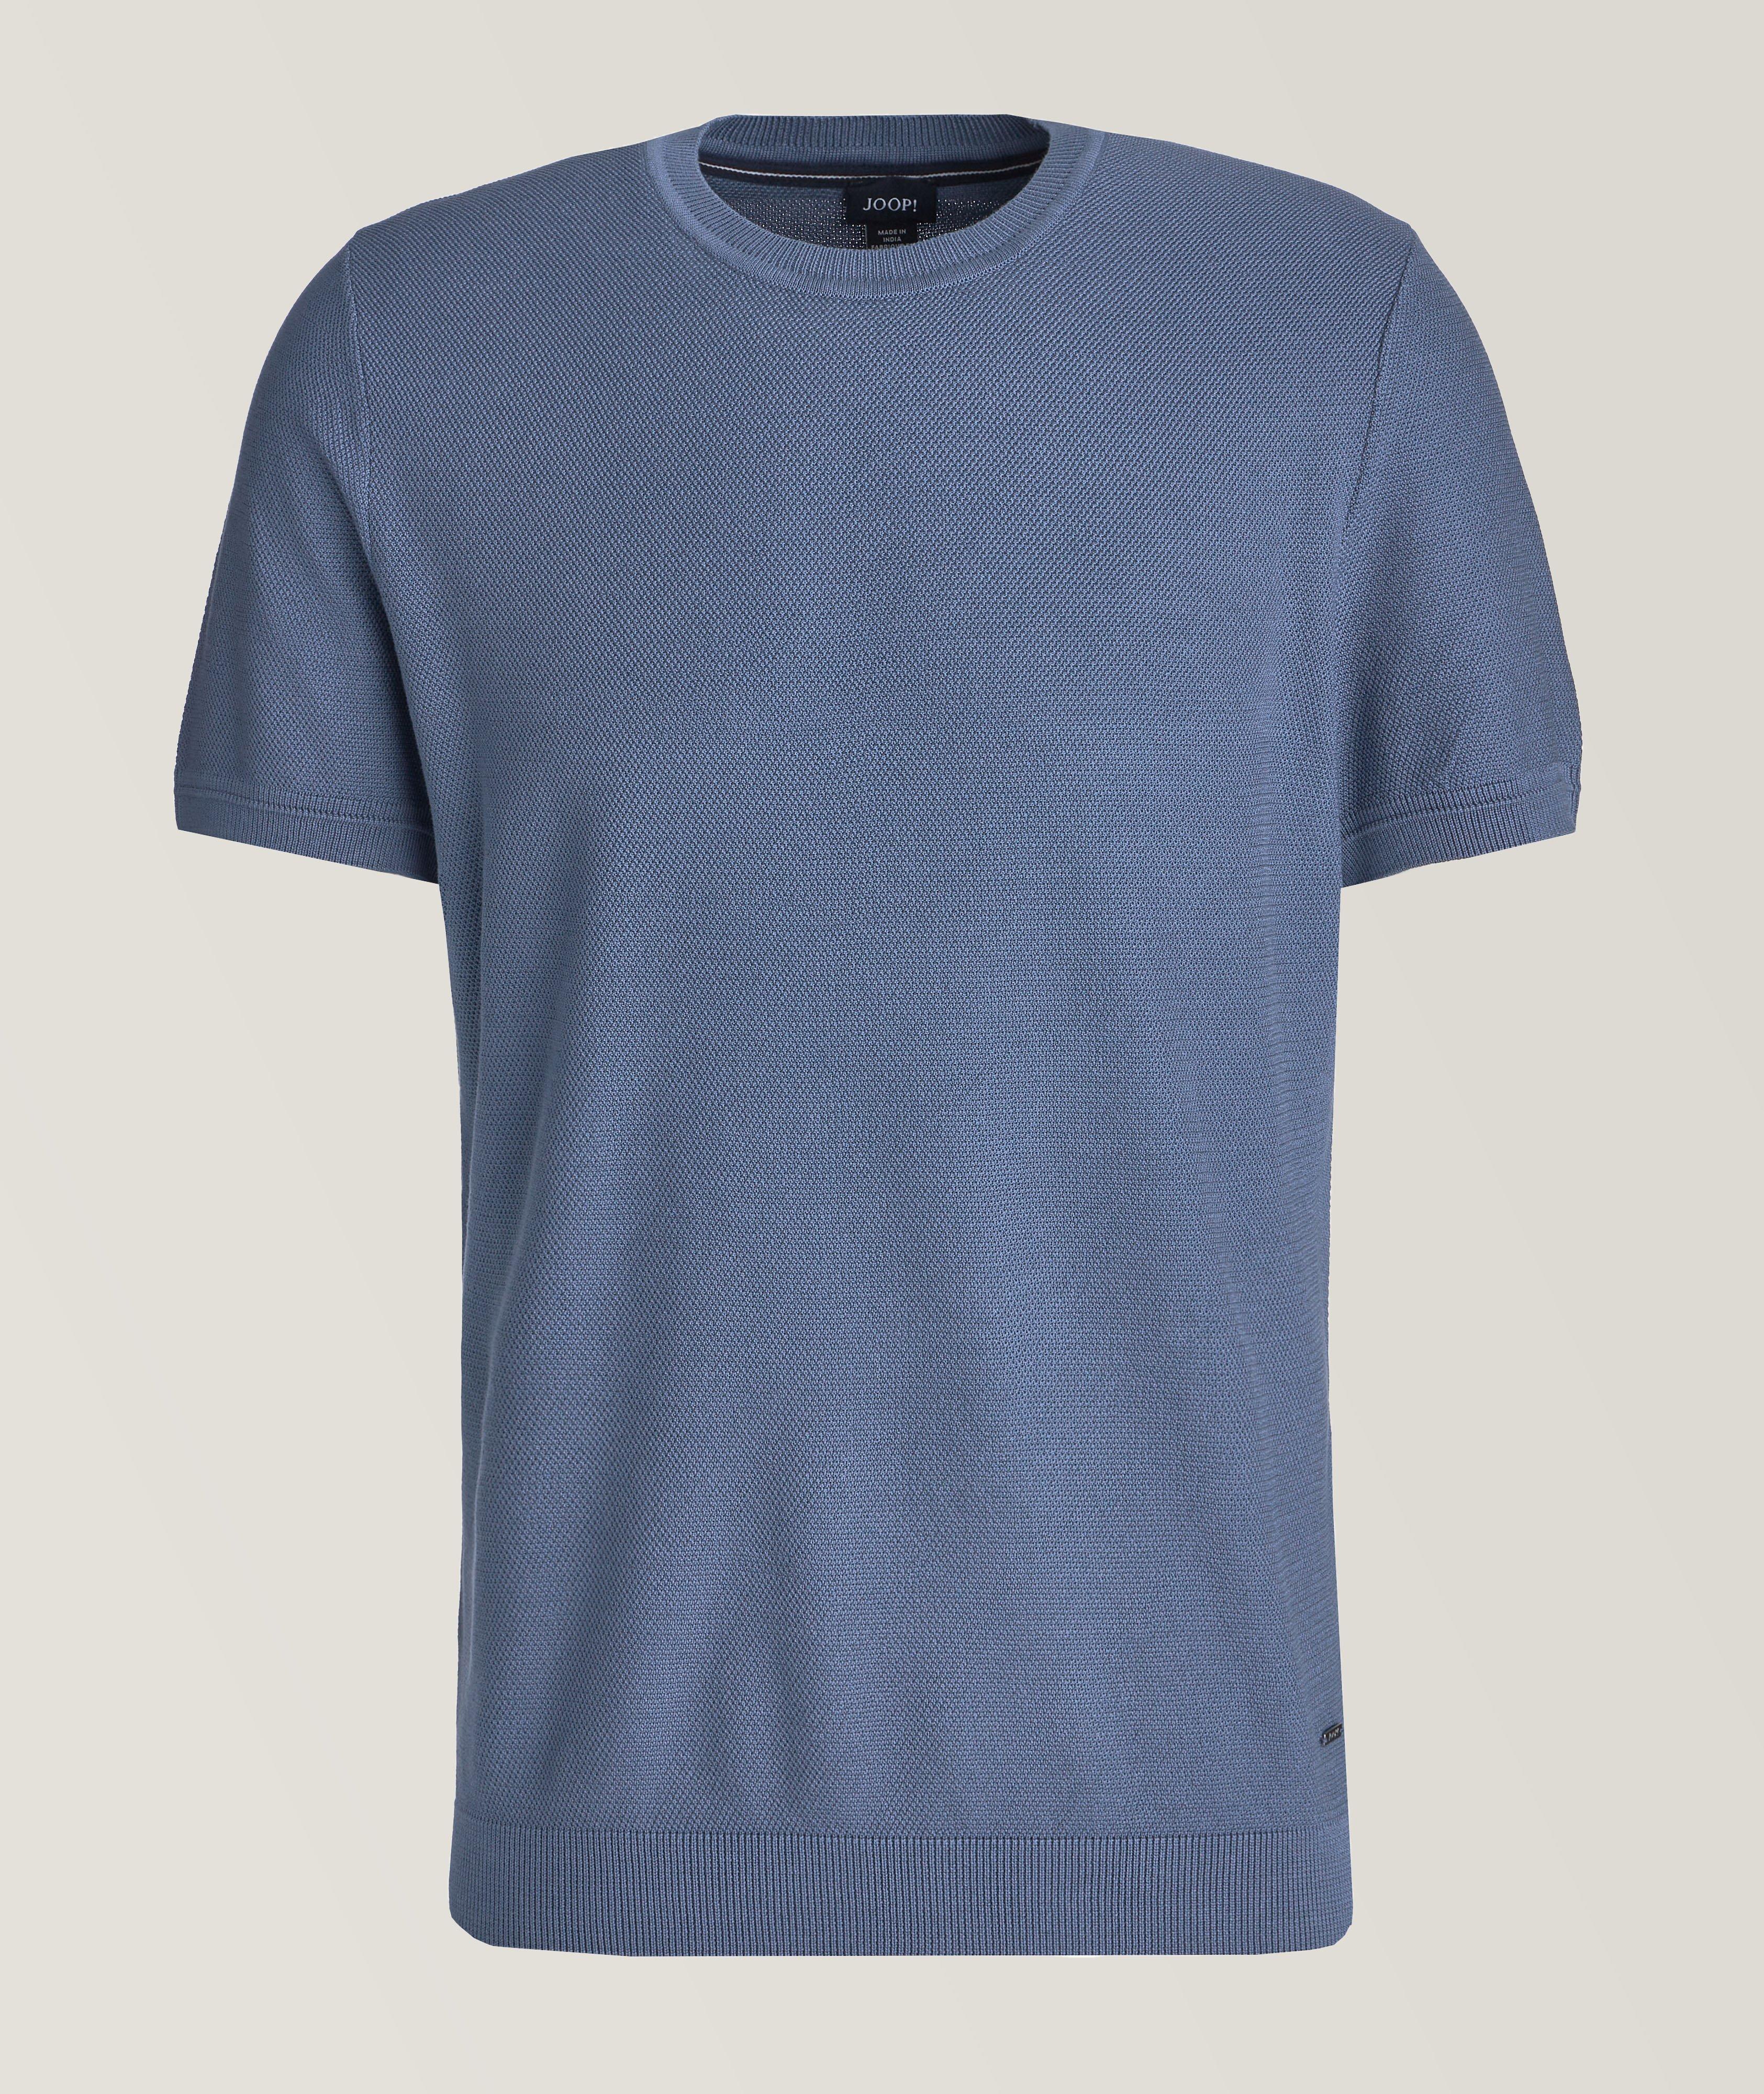 Valdrio Textured Cotton T-Shirt